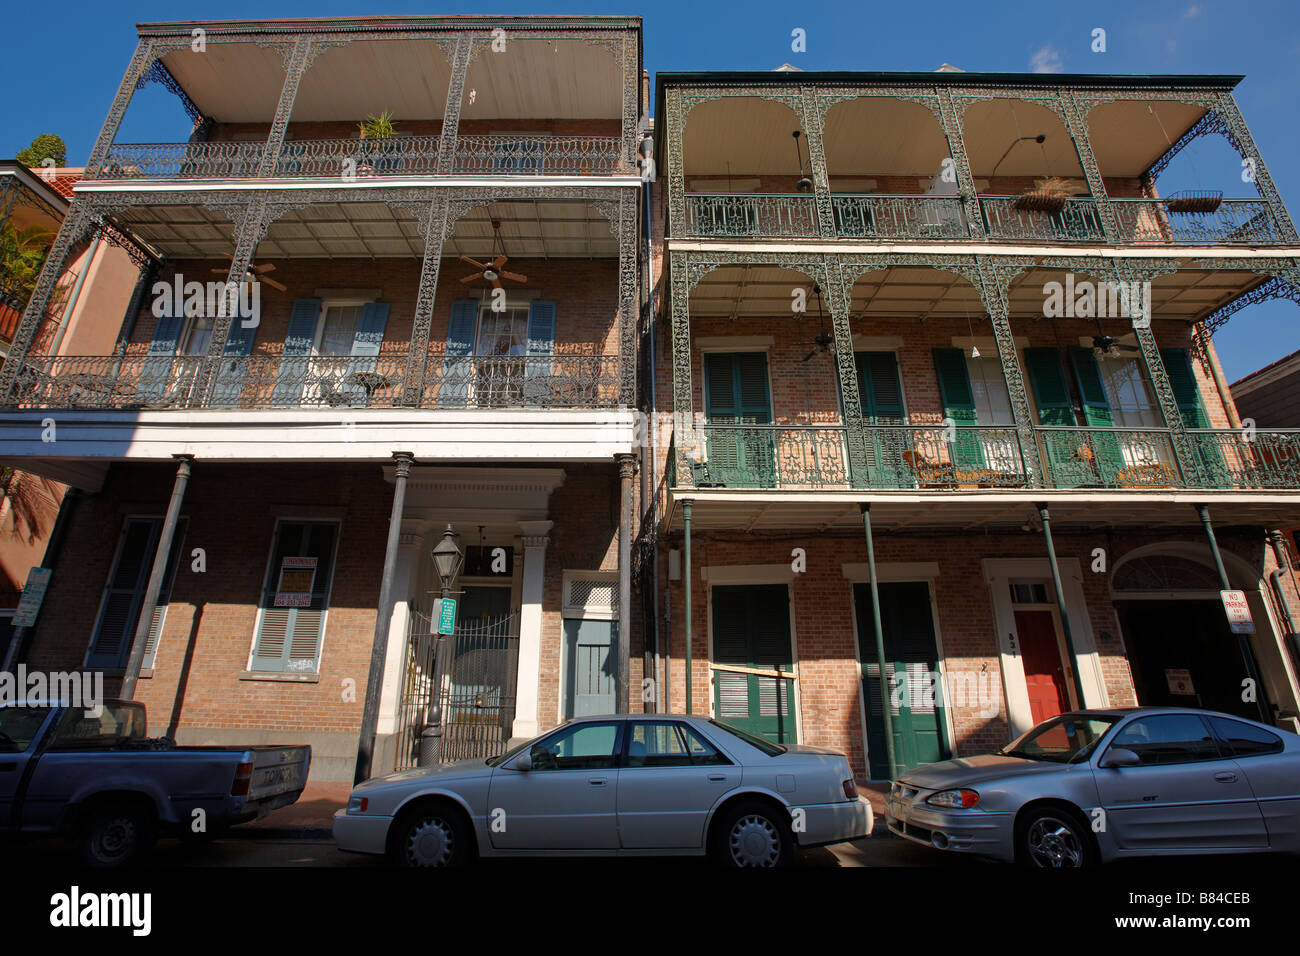 Maisons résidentielles typiques avec balcon dans le quartier français (Vieux Quartier). La Nouvelle-Orléans, Louisiane, Etats-Unis. Banque D'Images